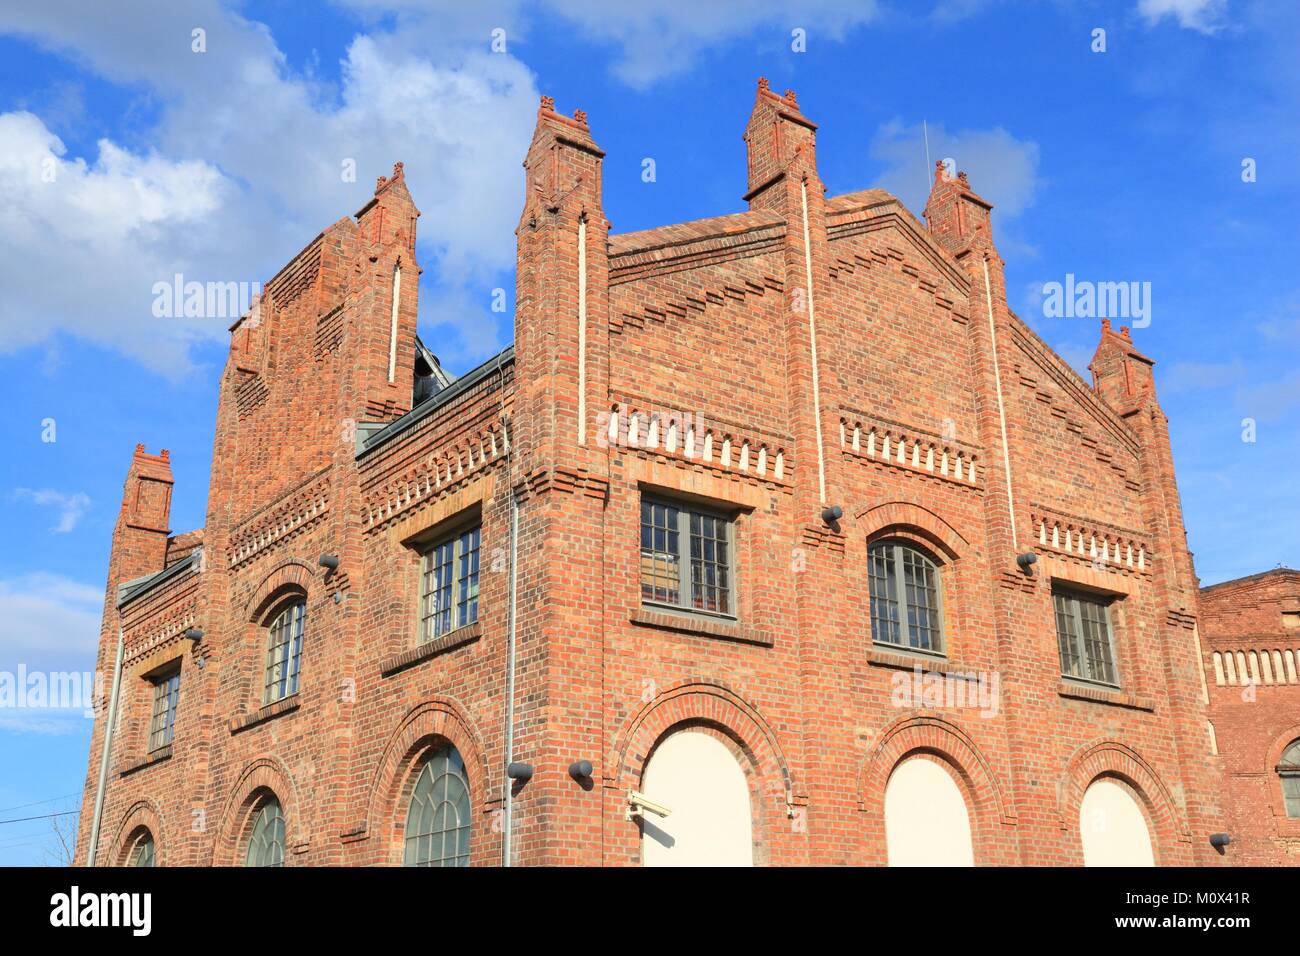 Katowice in Polonia - la vecchia fabbrica industriale architettura in mattoni. Alta Slesia regione. Foto Stock